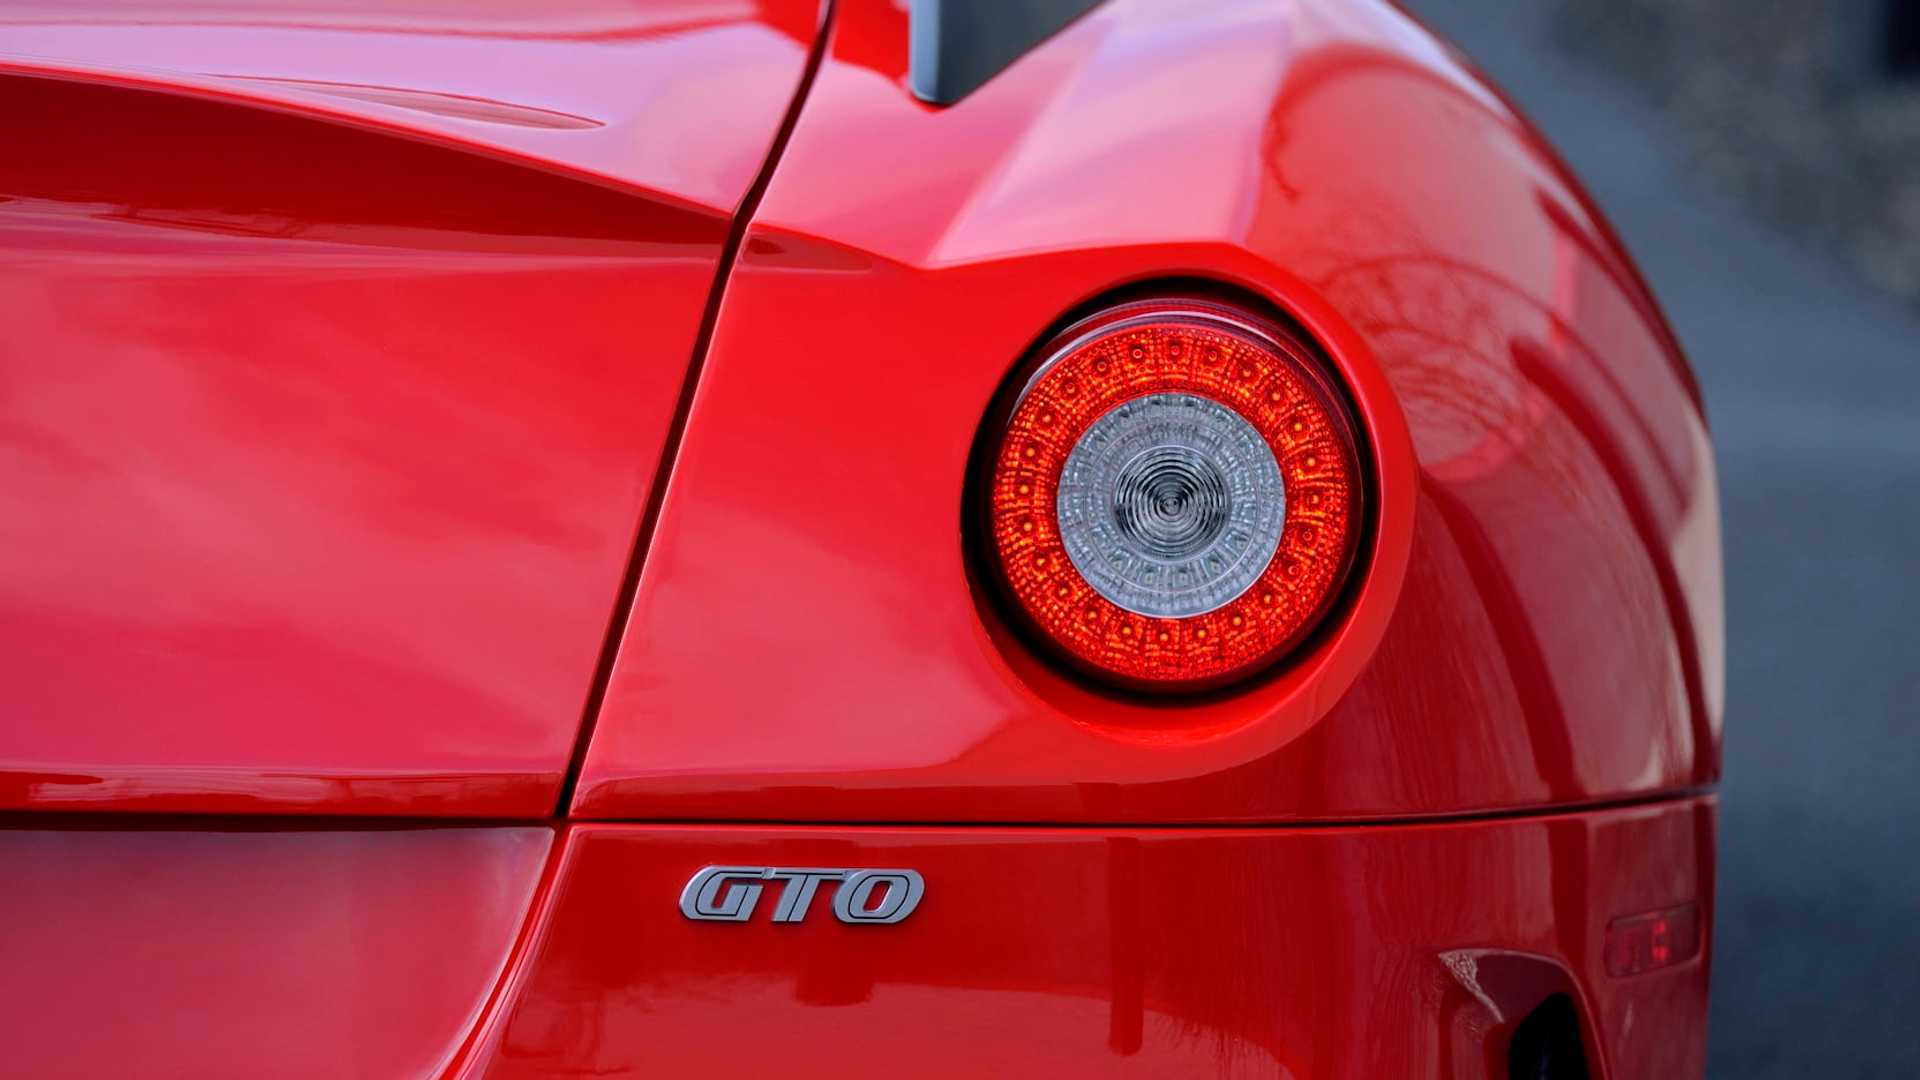 Raro Ferrari 599 GTO com apenas 270 quilómetros feitos vai a leilão